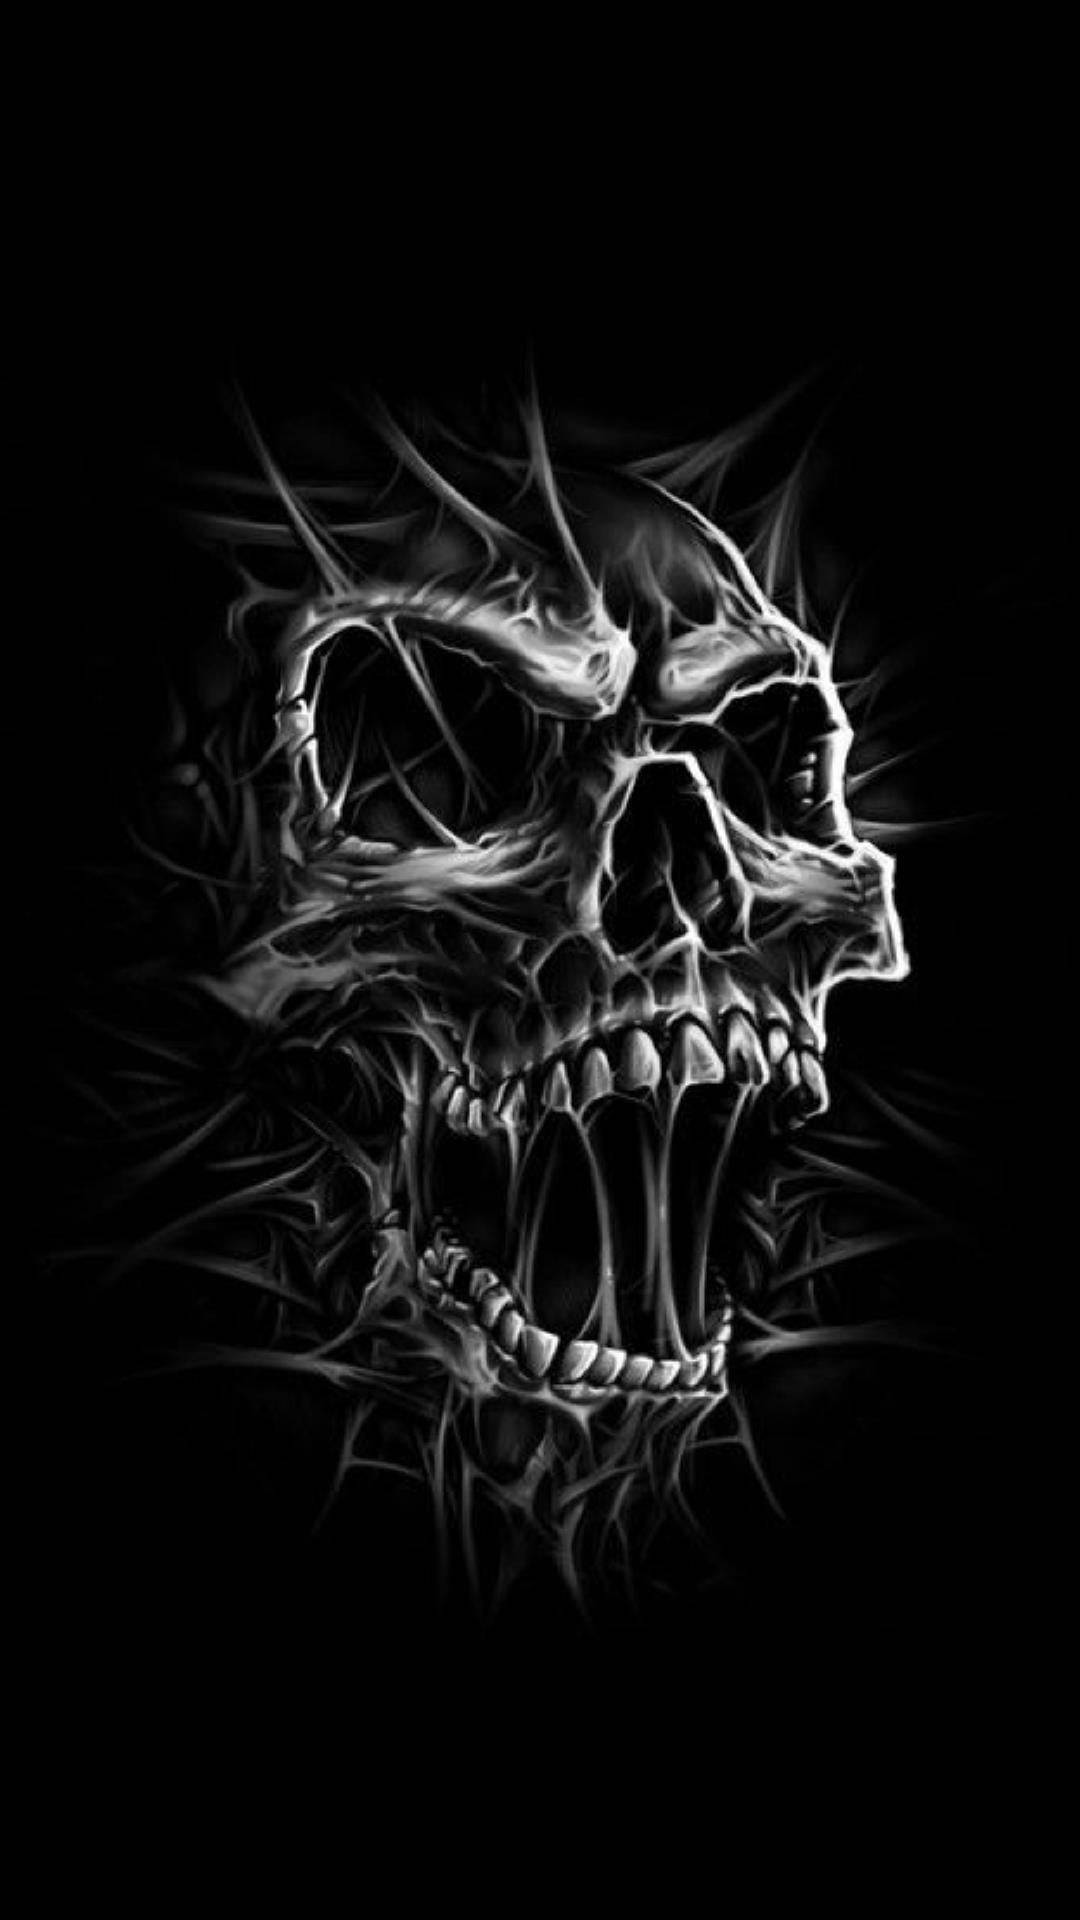 39456 Dark Skull 4K - Rare Gallery HD Wallpapers